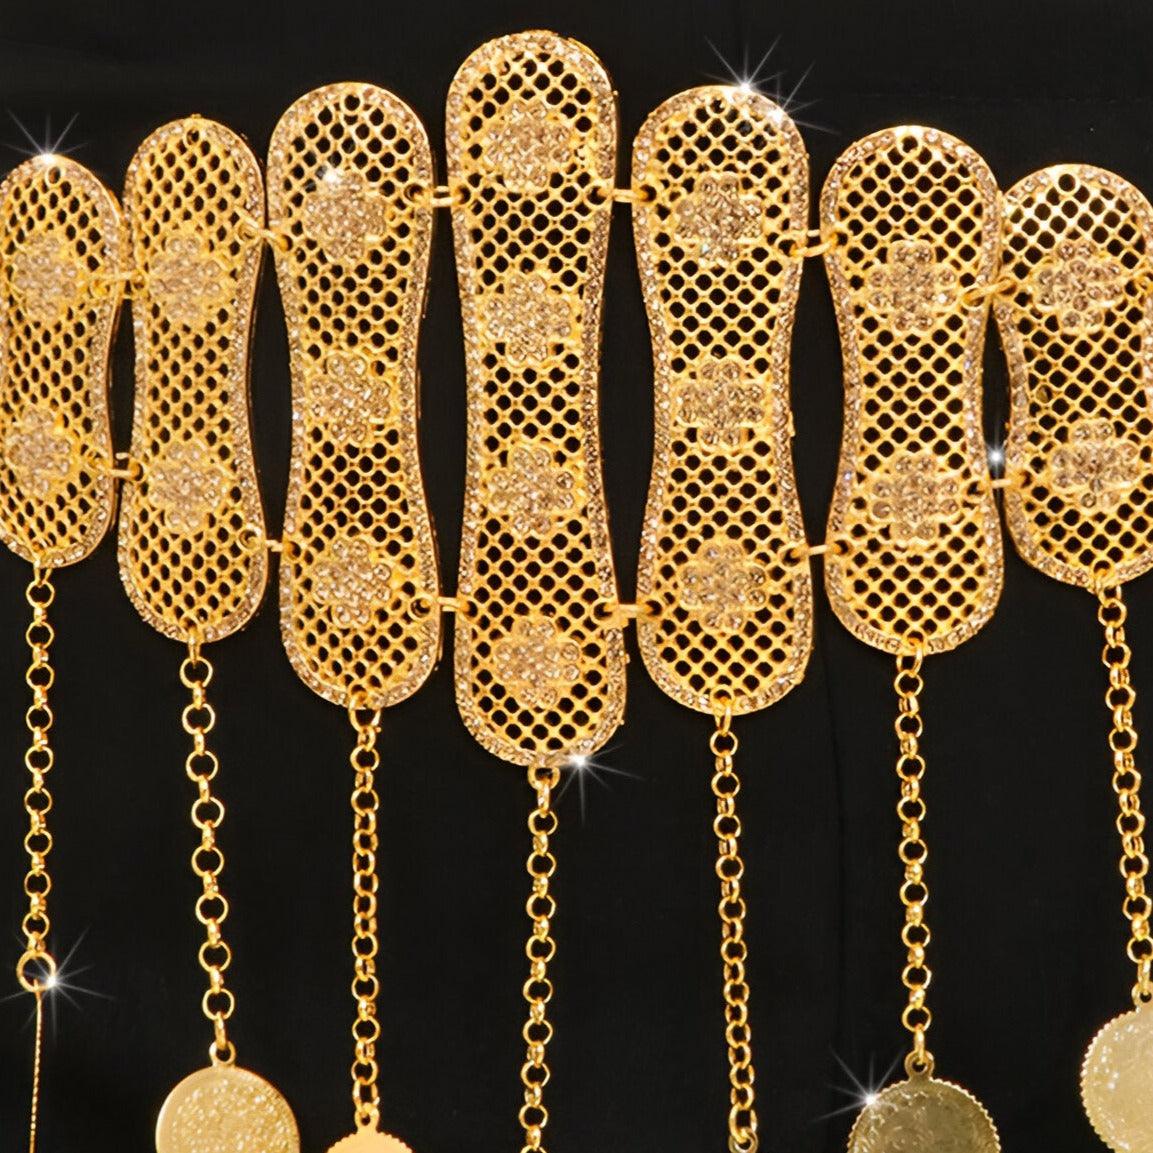 Ceinture marocaine dorée à motifs avec médaillons, modèle Mumina - La Boutique de la Ceinture